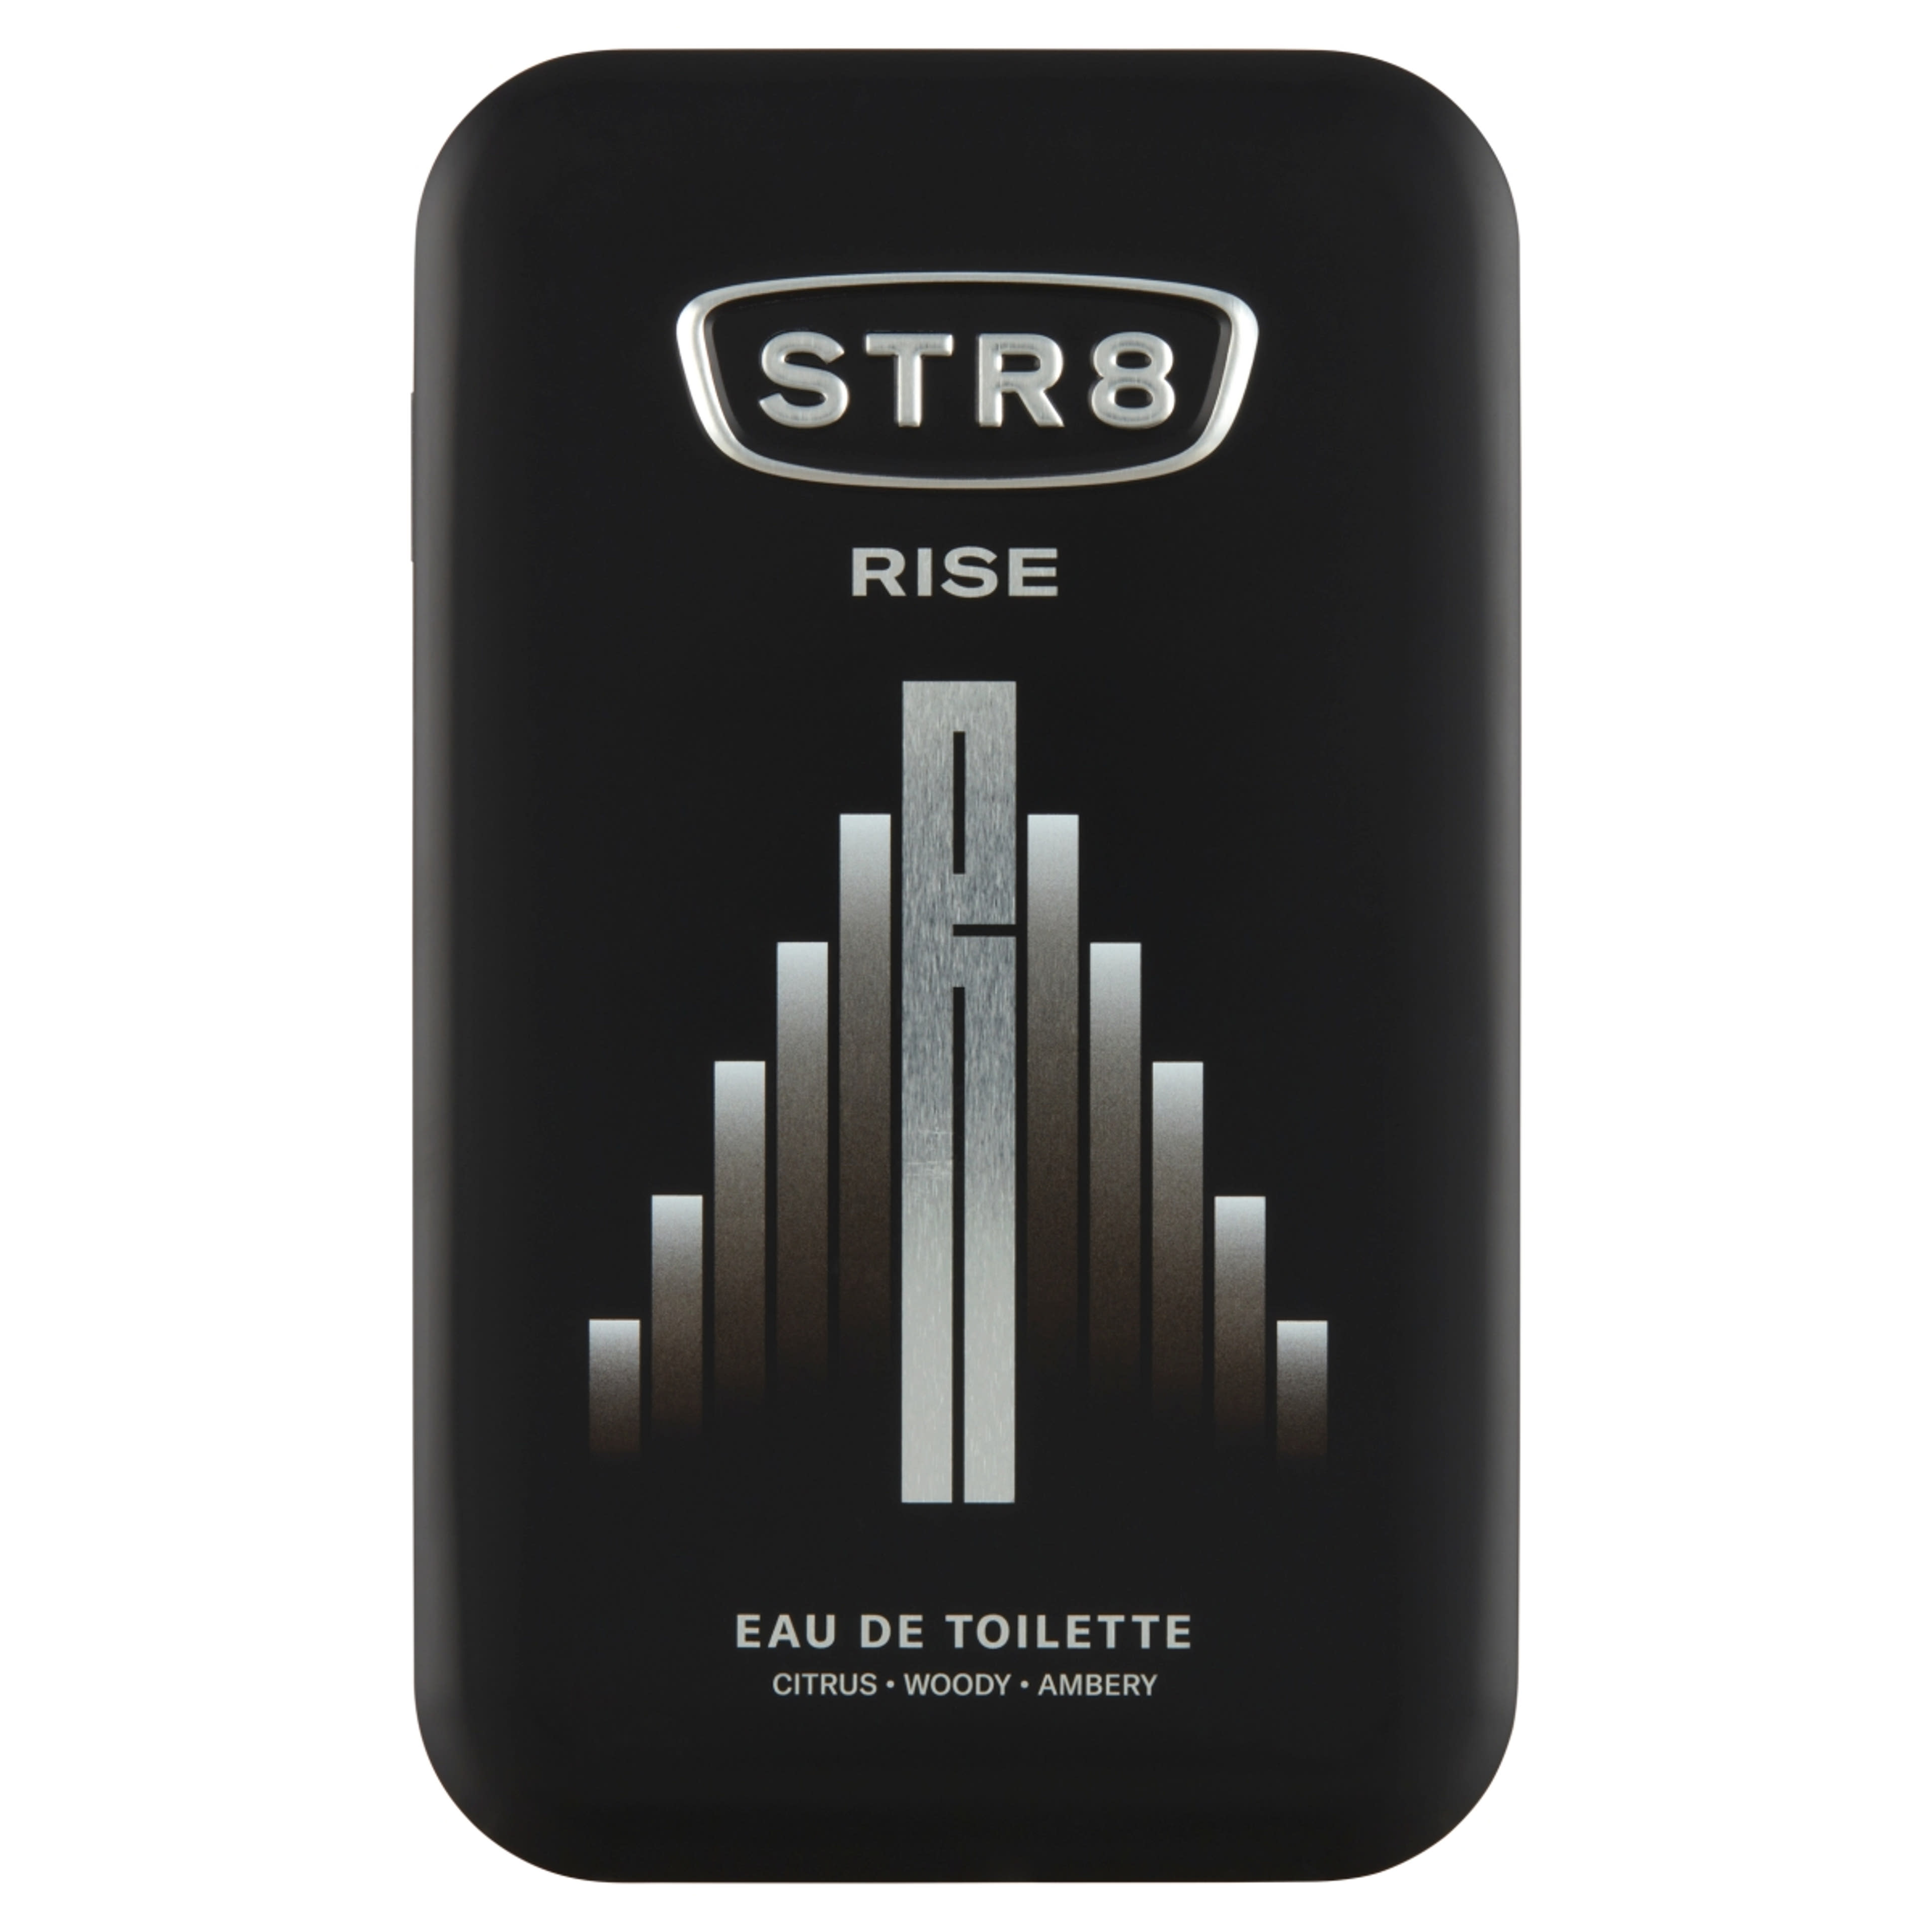 STR8 Rise eau de toilette - 100 ml-1